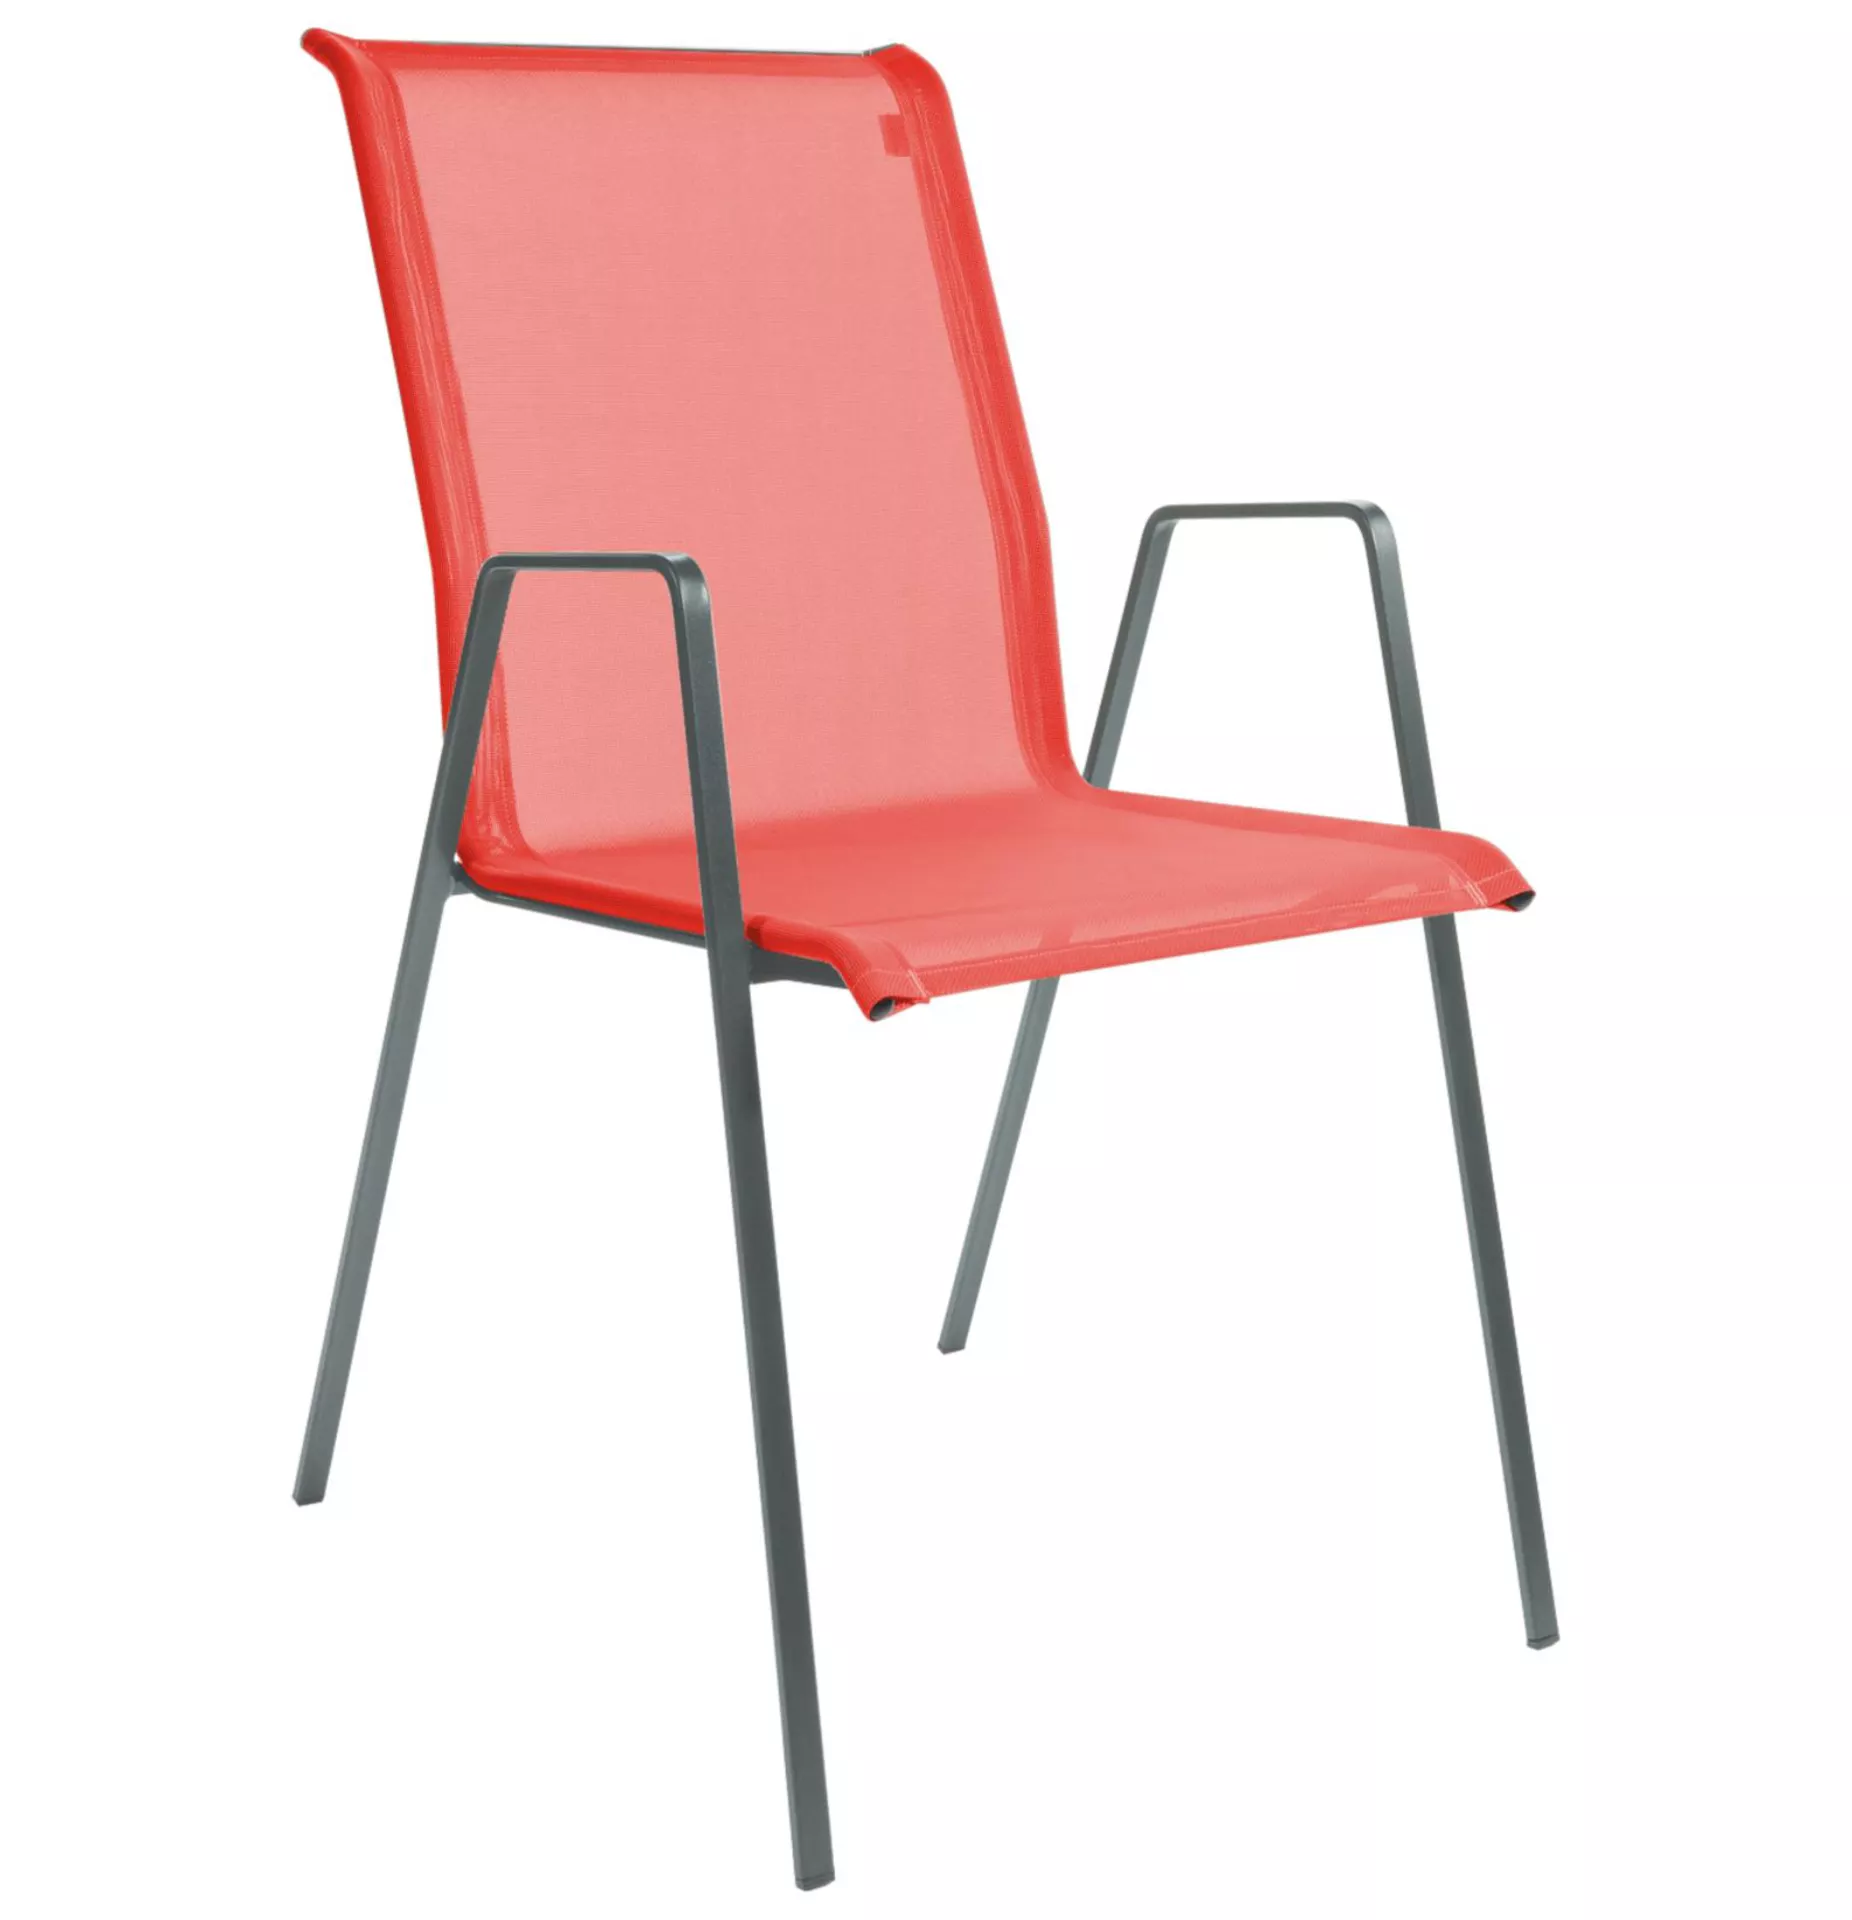 Matten-Sessel Luzern Schaffner / Farbe: Rot